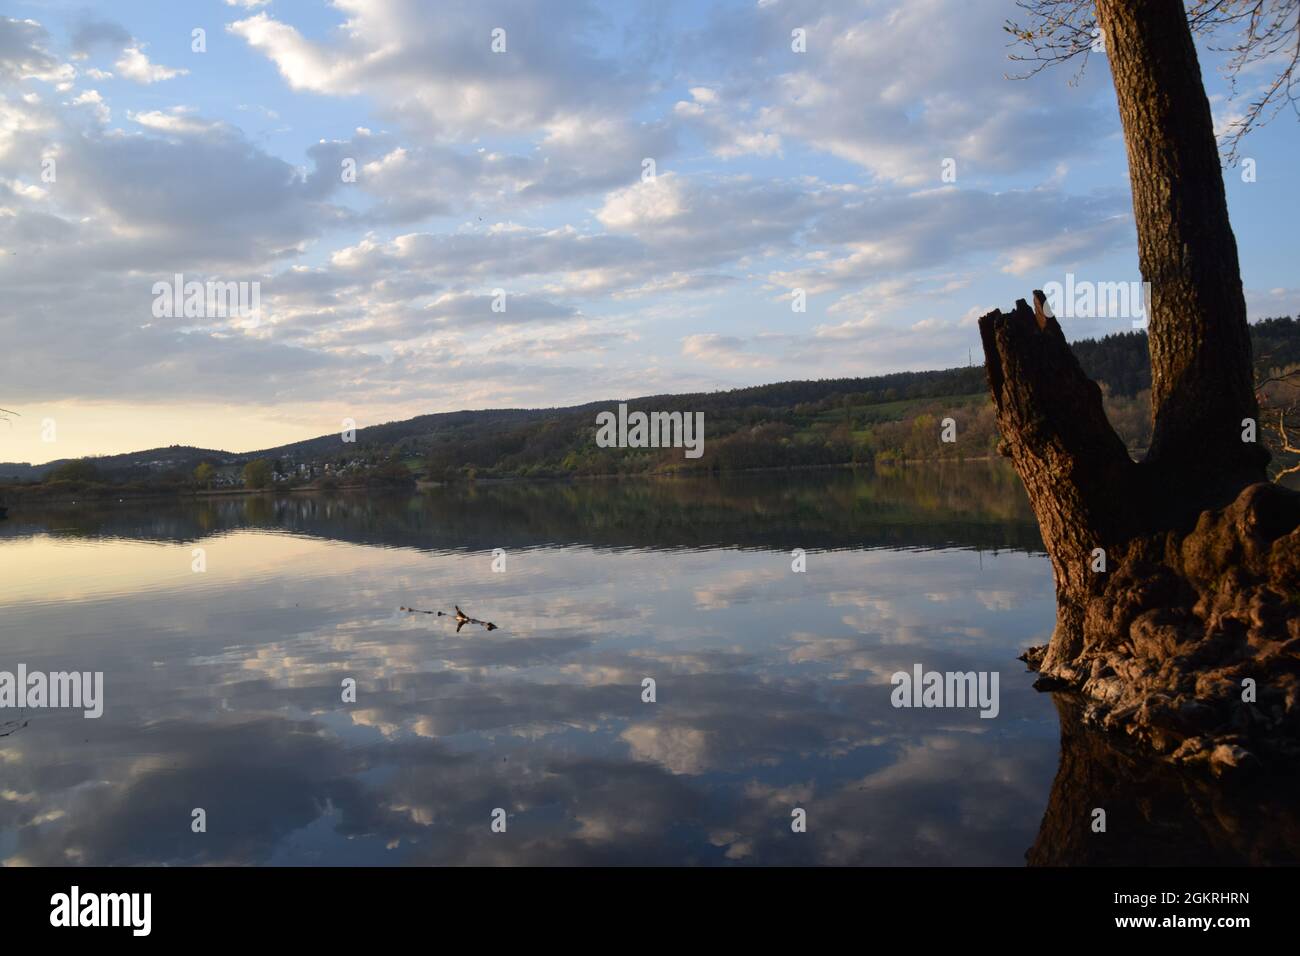 Sonnenuntergang mit wolken und einem baum im wasser gespiegelt am mindelsee bei radolfzell bodensee lago de constance fotografiert mit der nikond3300 Foto de stock